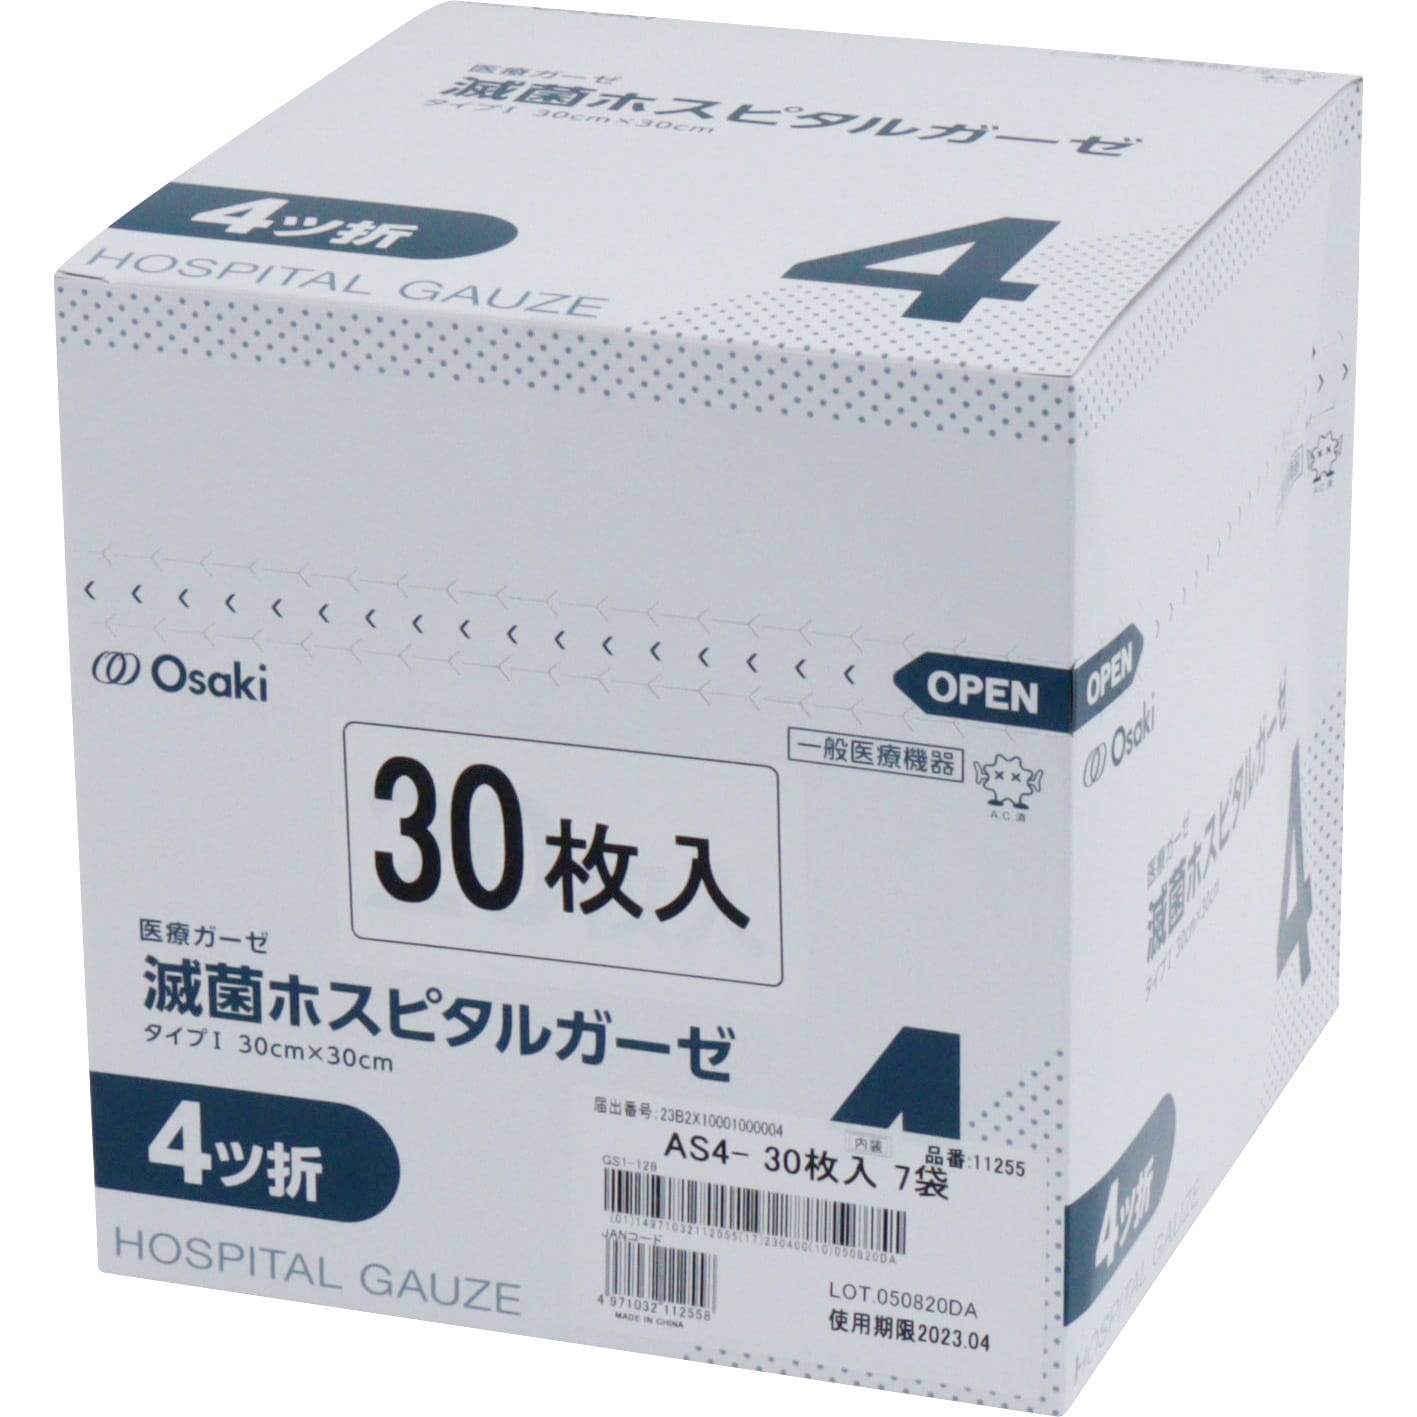 00011255 滅菌ホスピタルガーゼAS 1箱(30枚×7袋) オオサキメディカル